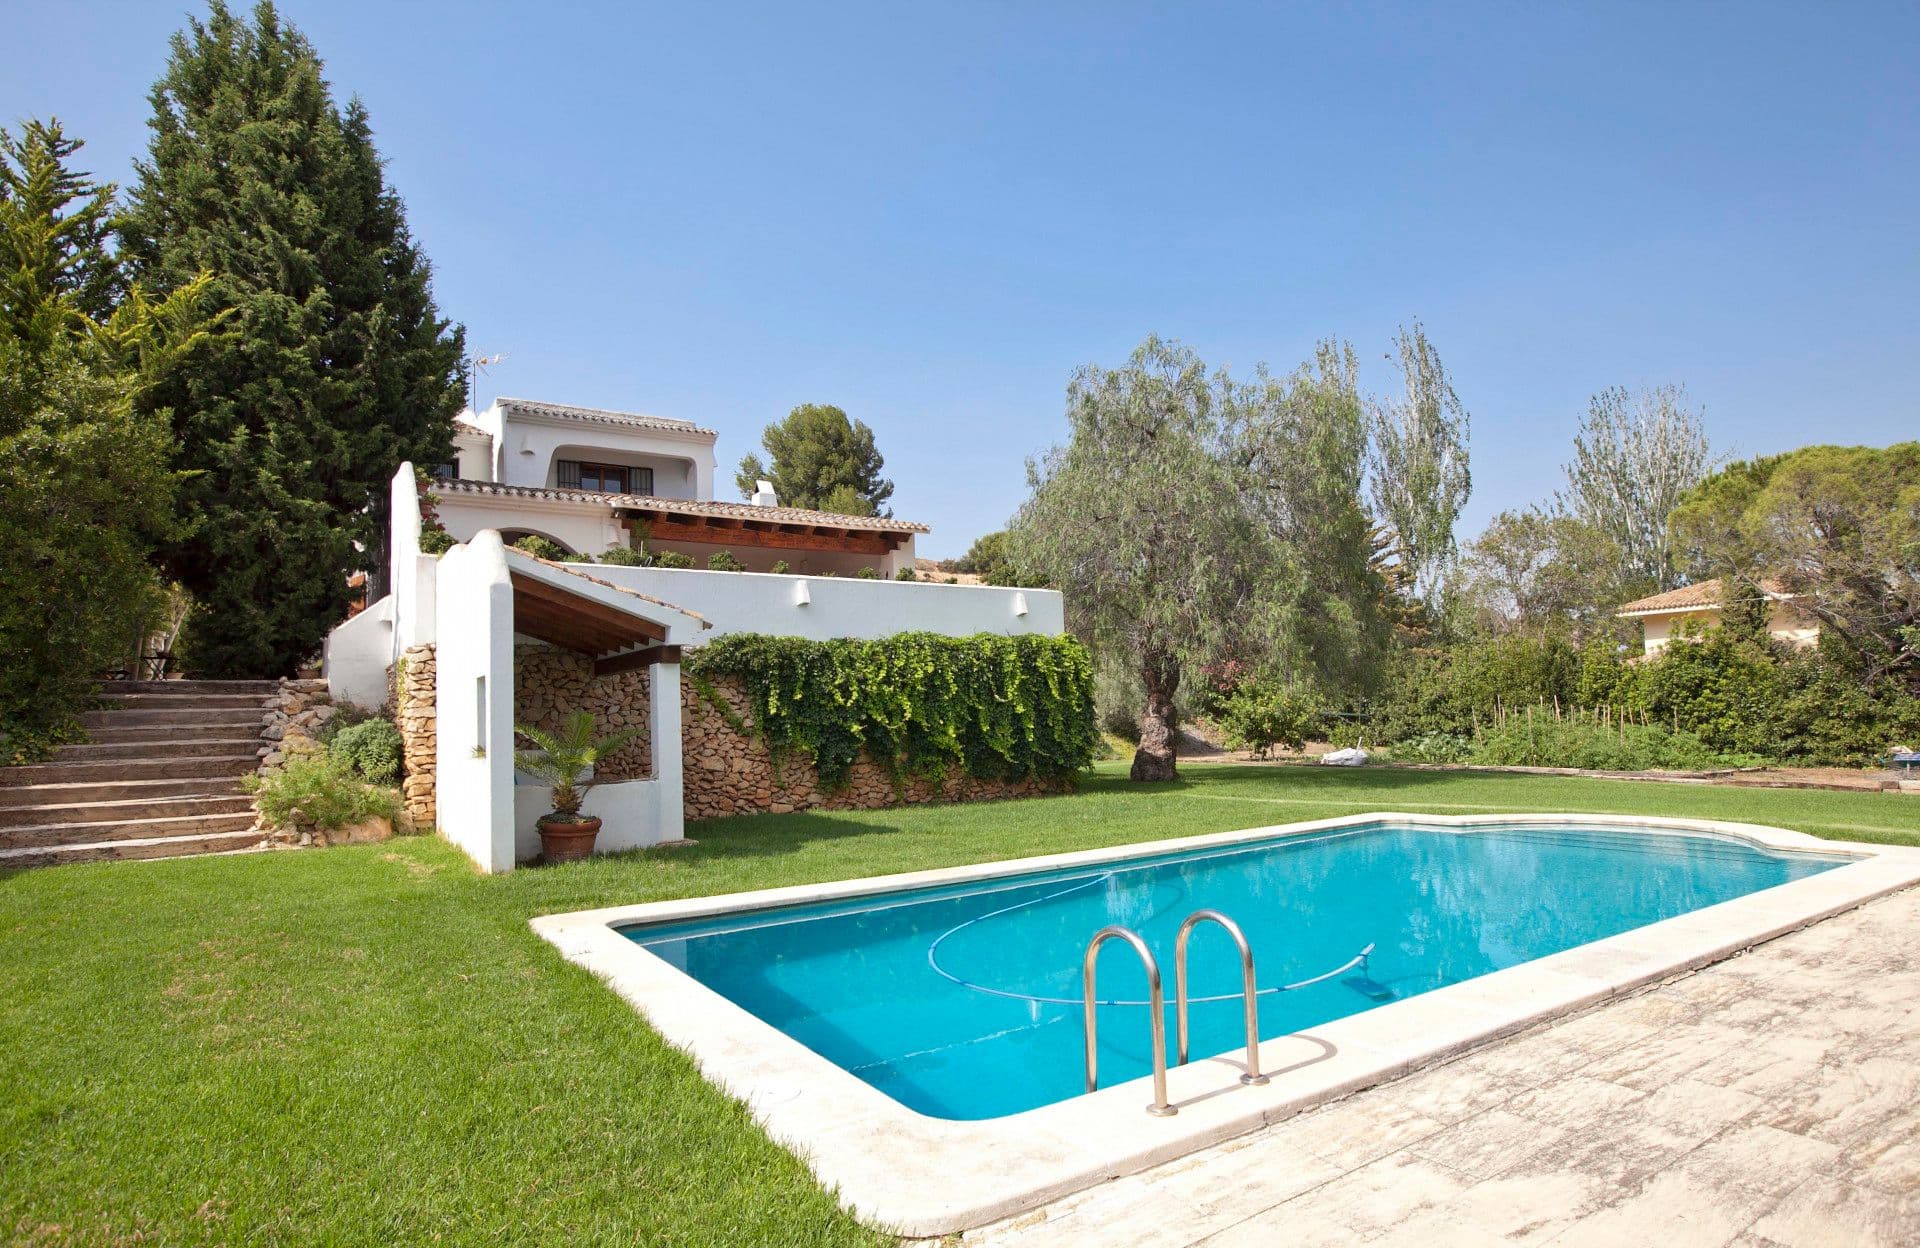 Ibiza-style villa overlooking prestigious El Bosque Golf Course in Chiva, near Valencia